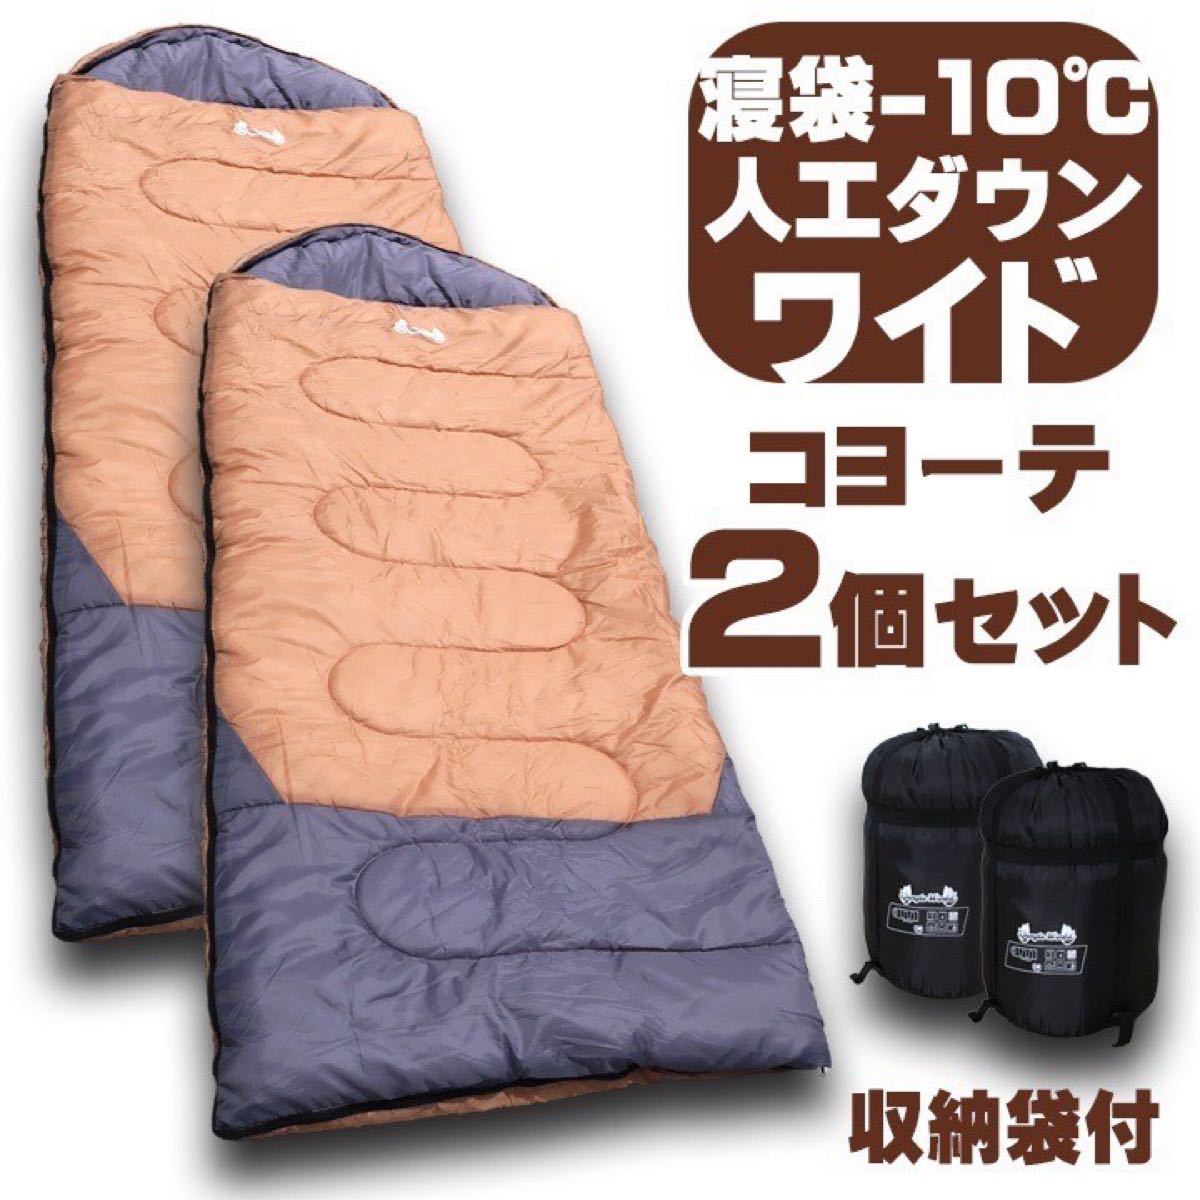 新品 jungle world 寝袋−10℃ 人工ダウンワイド【2個セット】コヨーテ